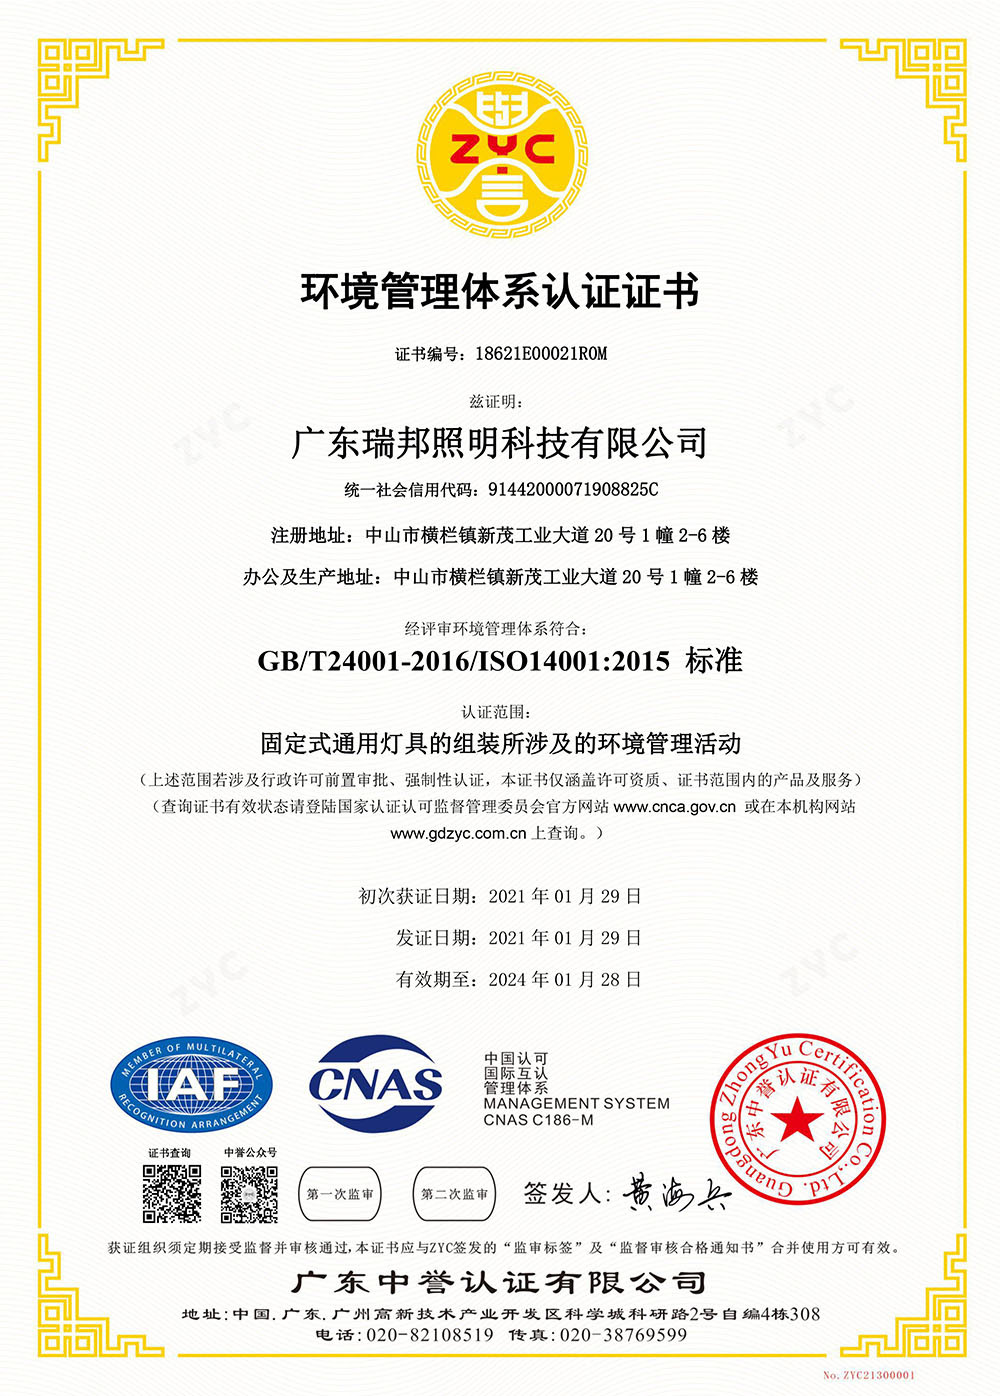 环境管理体系认证ISO14001 中文